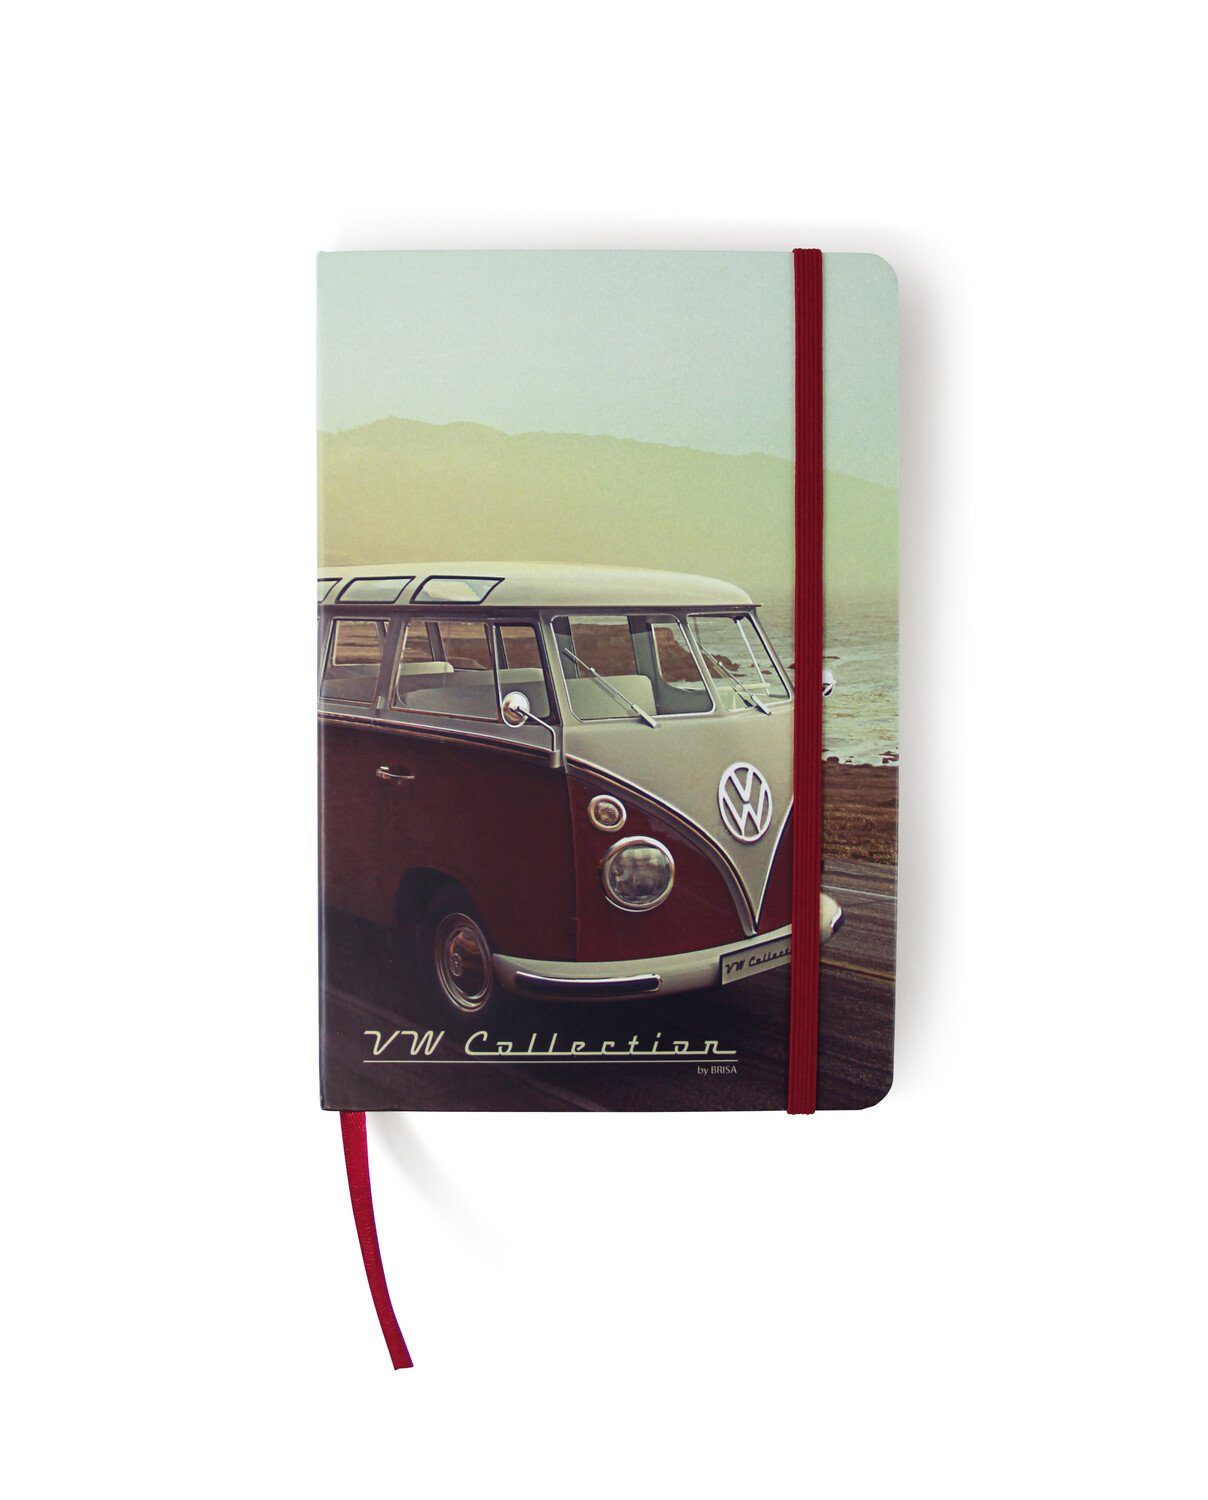 DIN Hardcover-Einband mit A5 im 1 VW Tagebuch, BRISA liniert Bulli im Collection im by T1 Design, Notizbuch Volkswagen Schreibbuch Highway Format Retro-Motiv